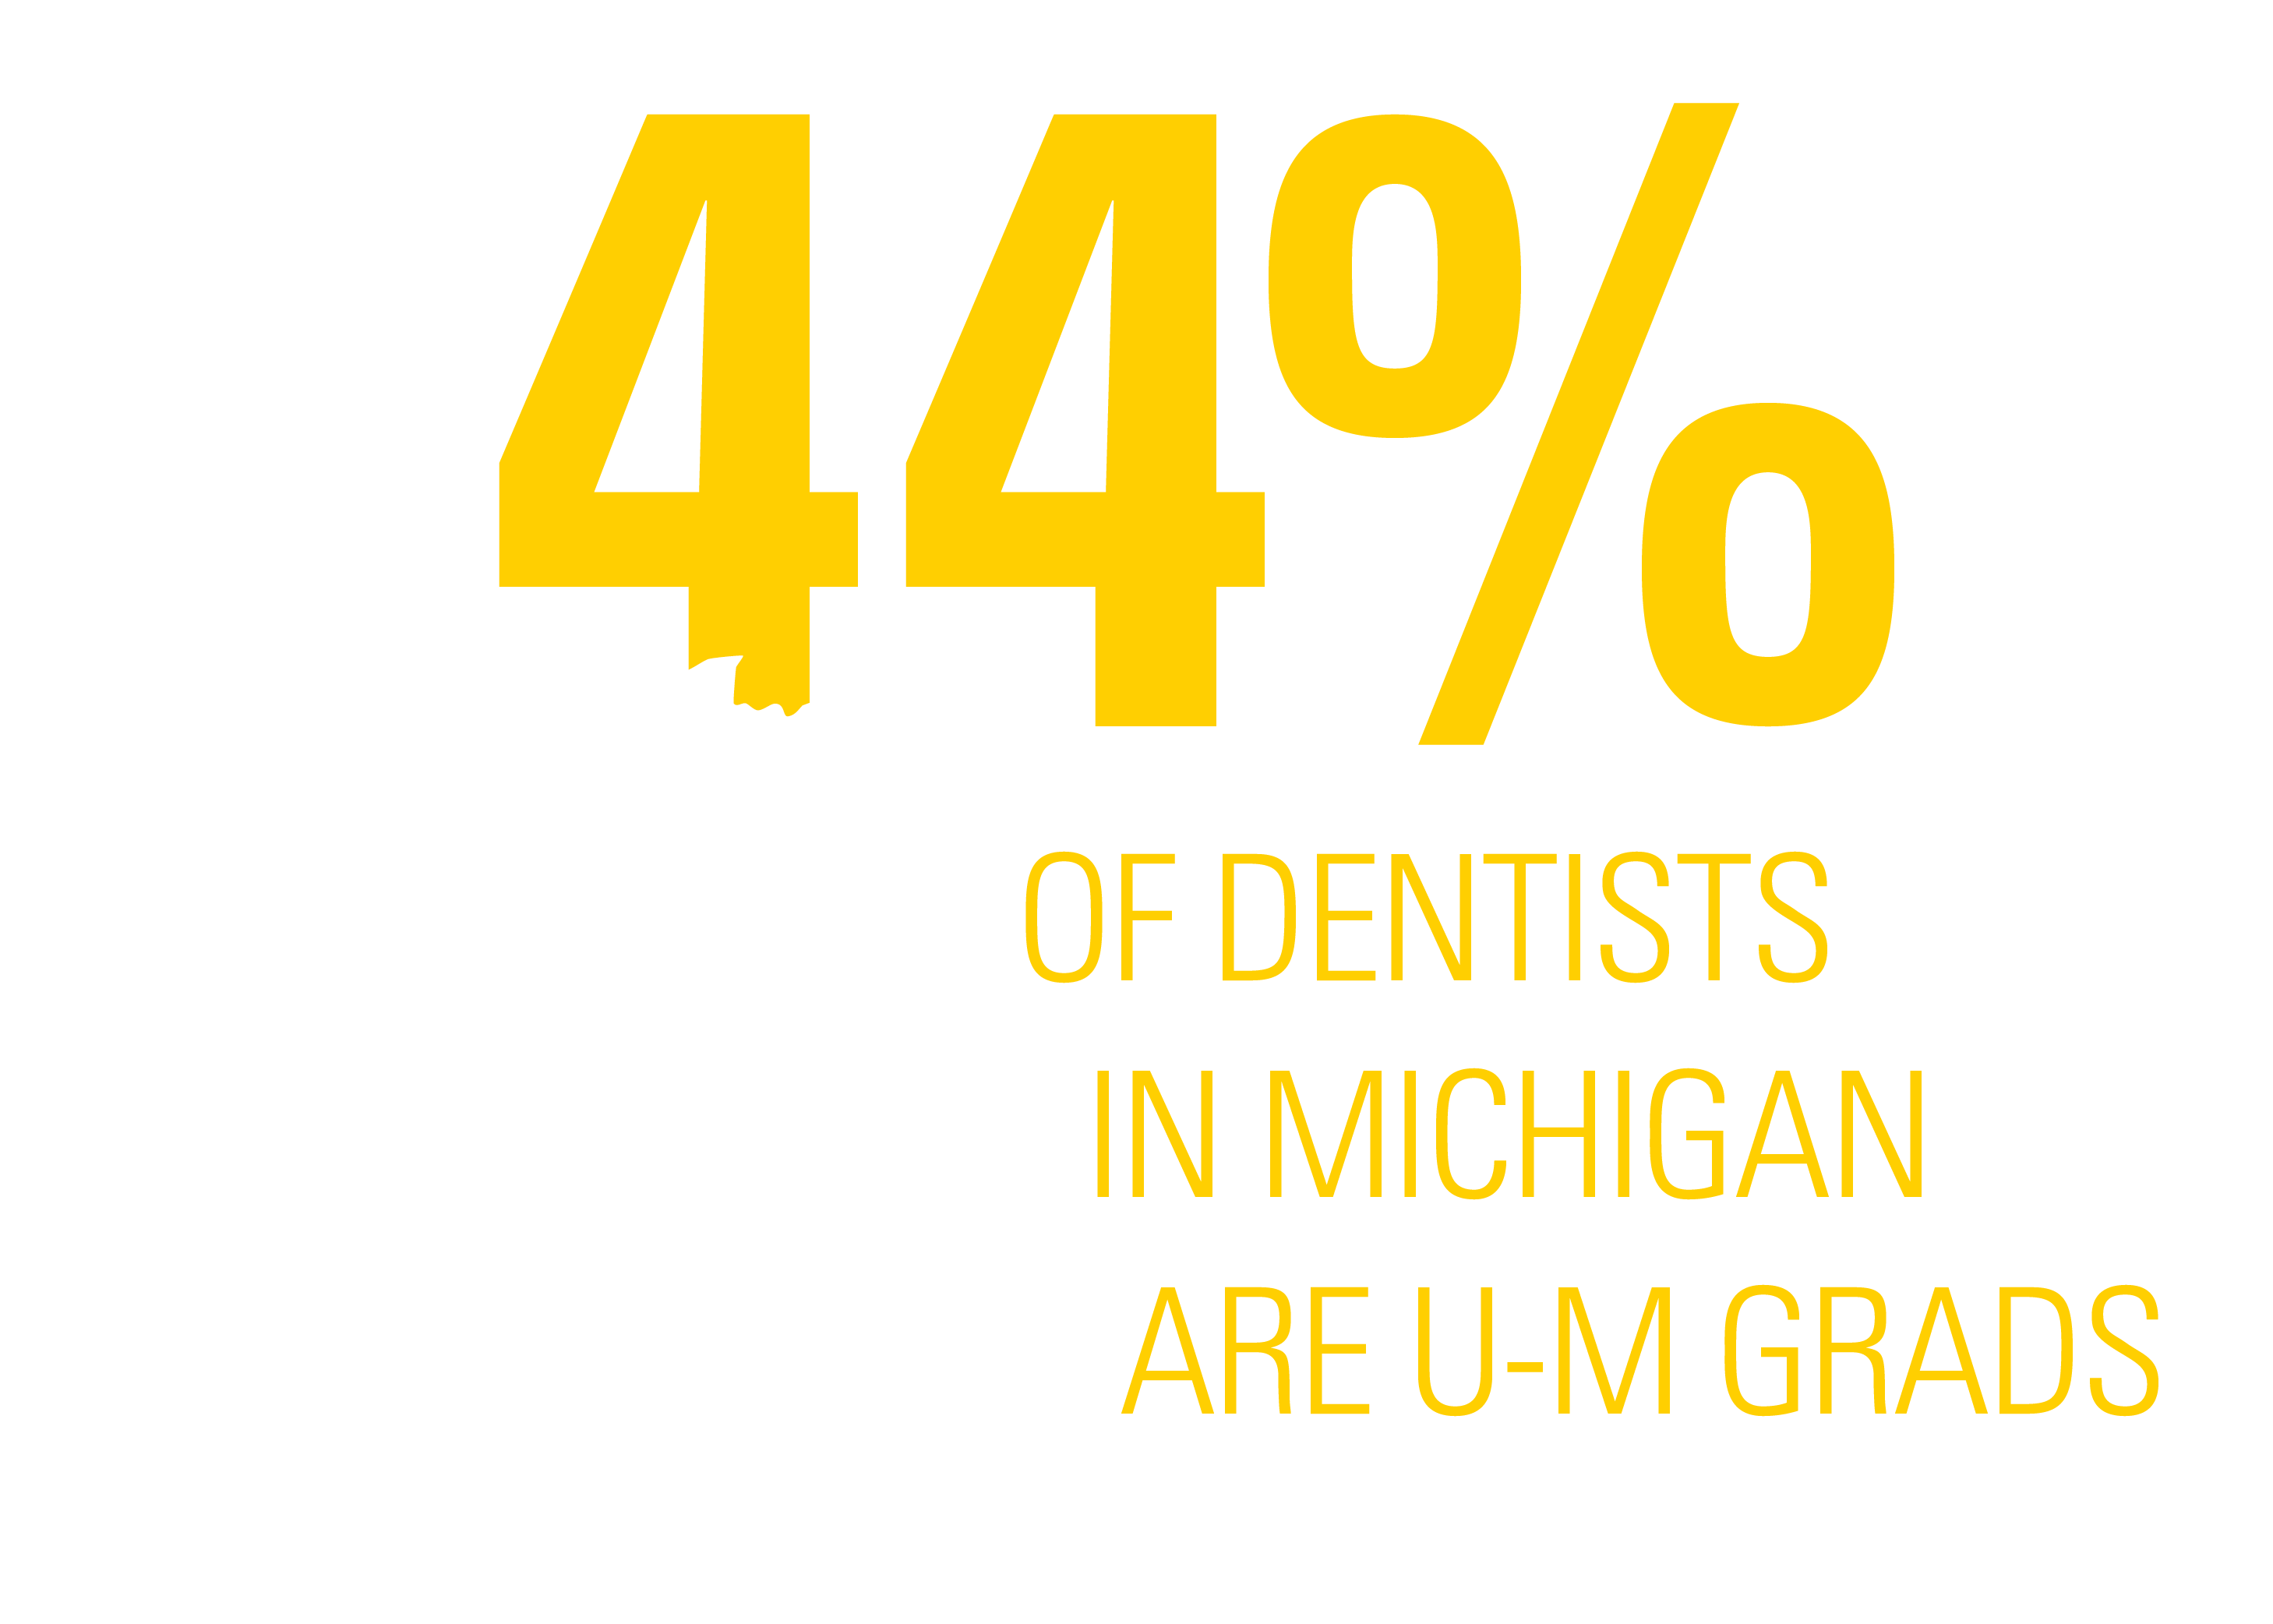 44% of Dentists in Michigan are U-M Grads